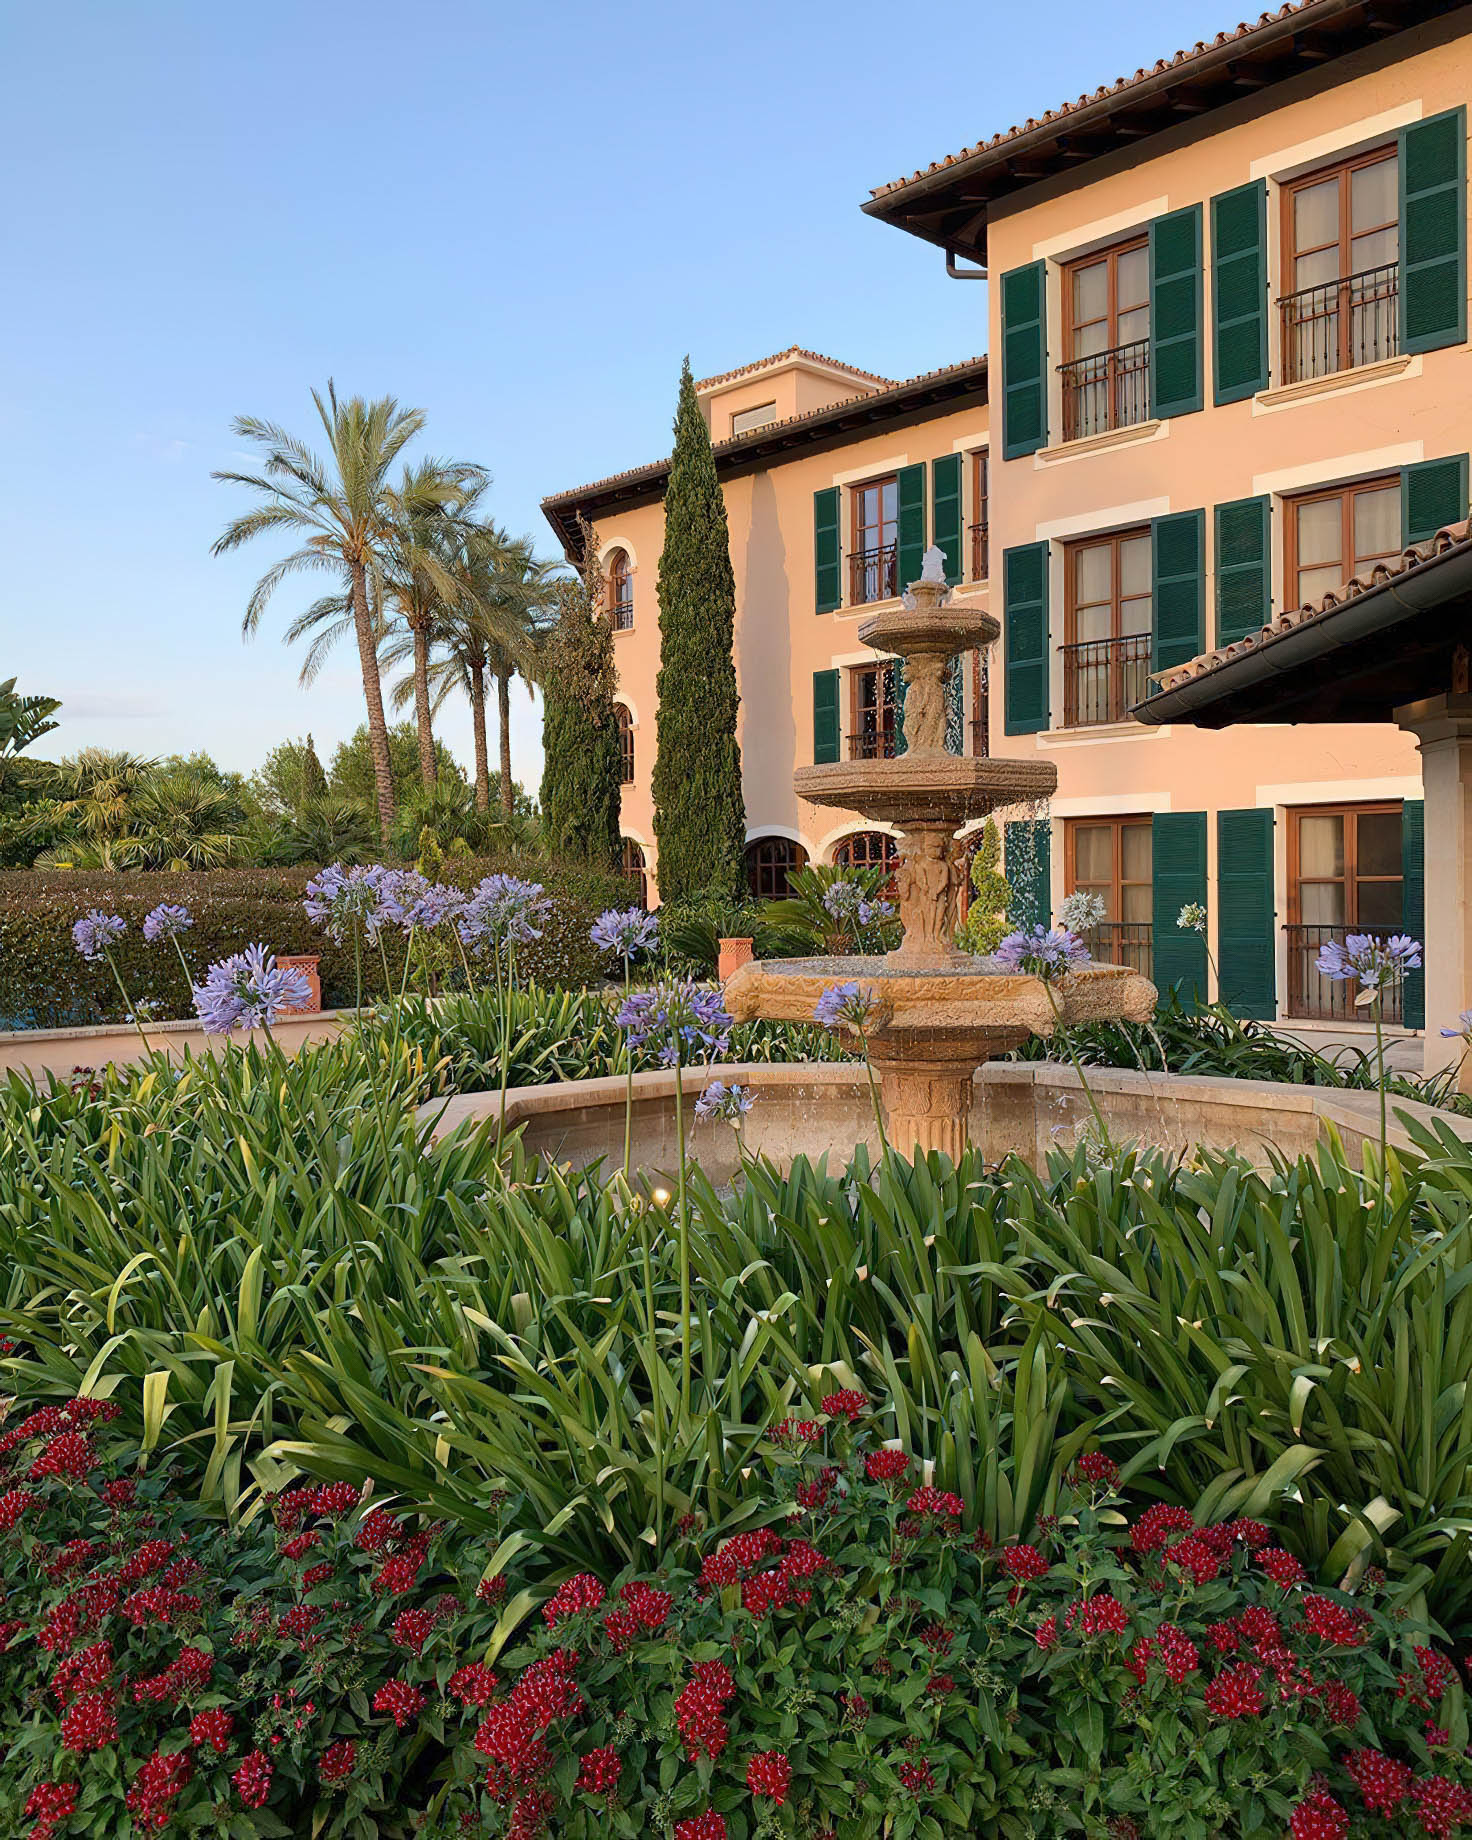 The St. Regis Mardavall Mallorca Resort – Palma de Mallorca, Spain – Outdoor Garden Fountain